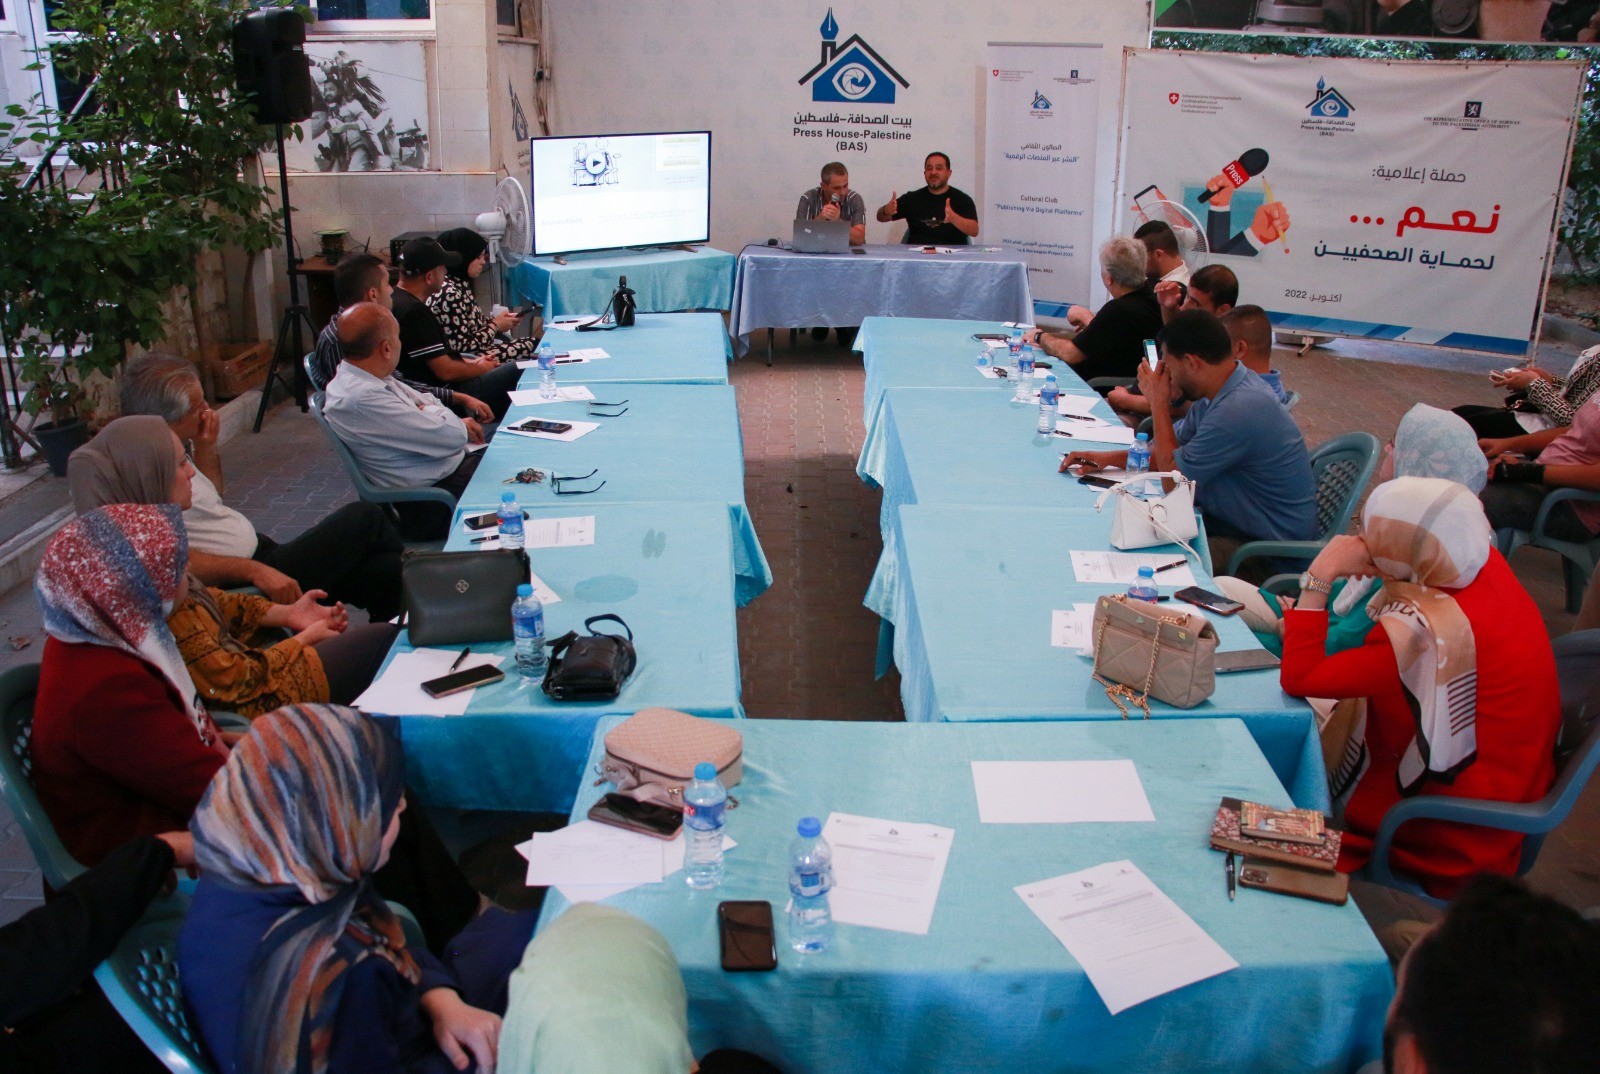 الصالون الثقافي في بيت الصحافة يعقد ندوة بعنوان "النشر عبر المنصات الرقمية"